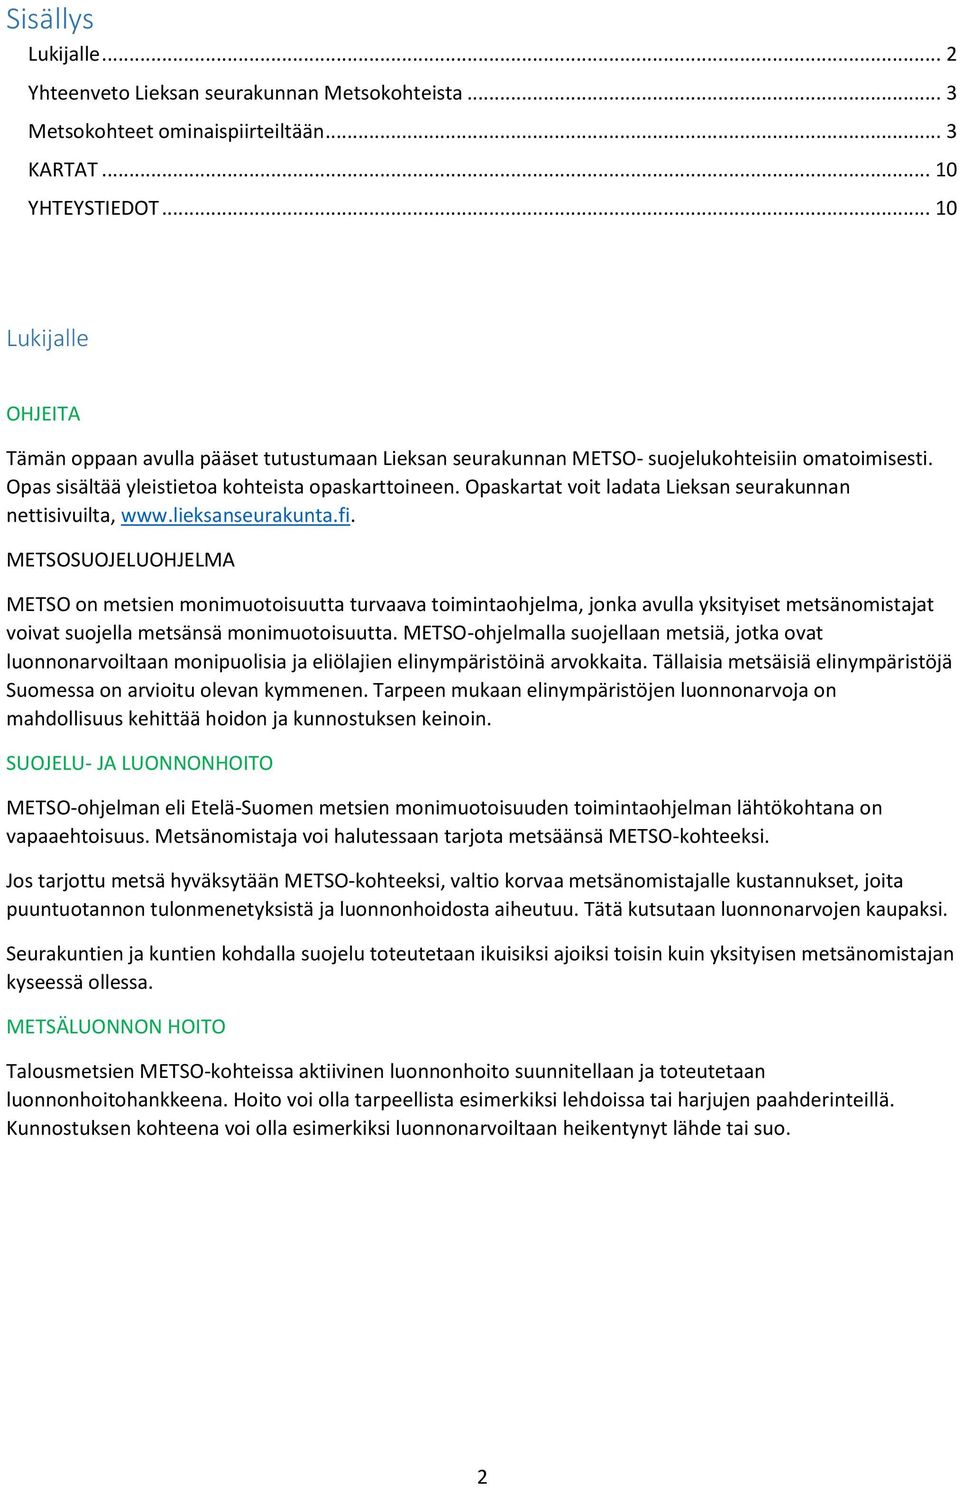 Opaskartat voit ladata Lieksan seurakunnan nettisivuilta, www.lieksanseurakunta.fi.